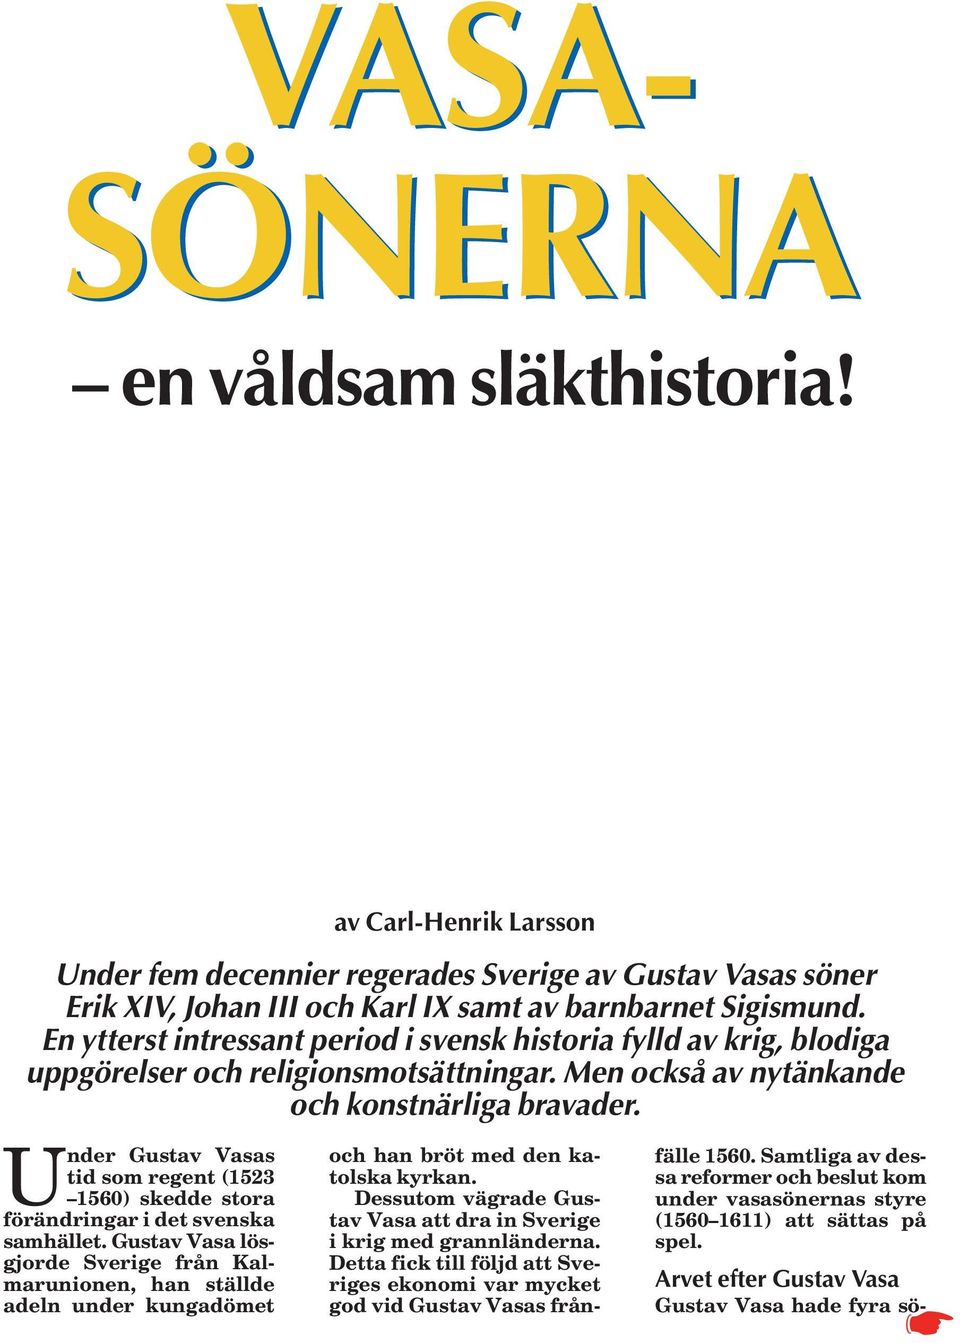 U nder Gustav Vasas tid som regent (1523 1560) skedde stora förändringar i det svenska samhället.